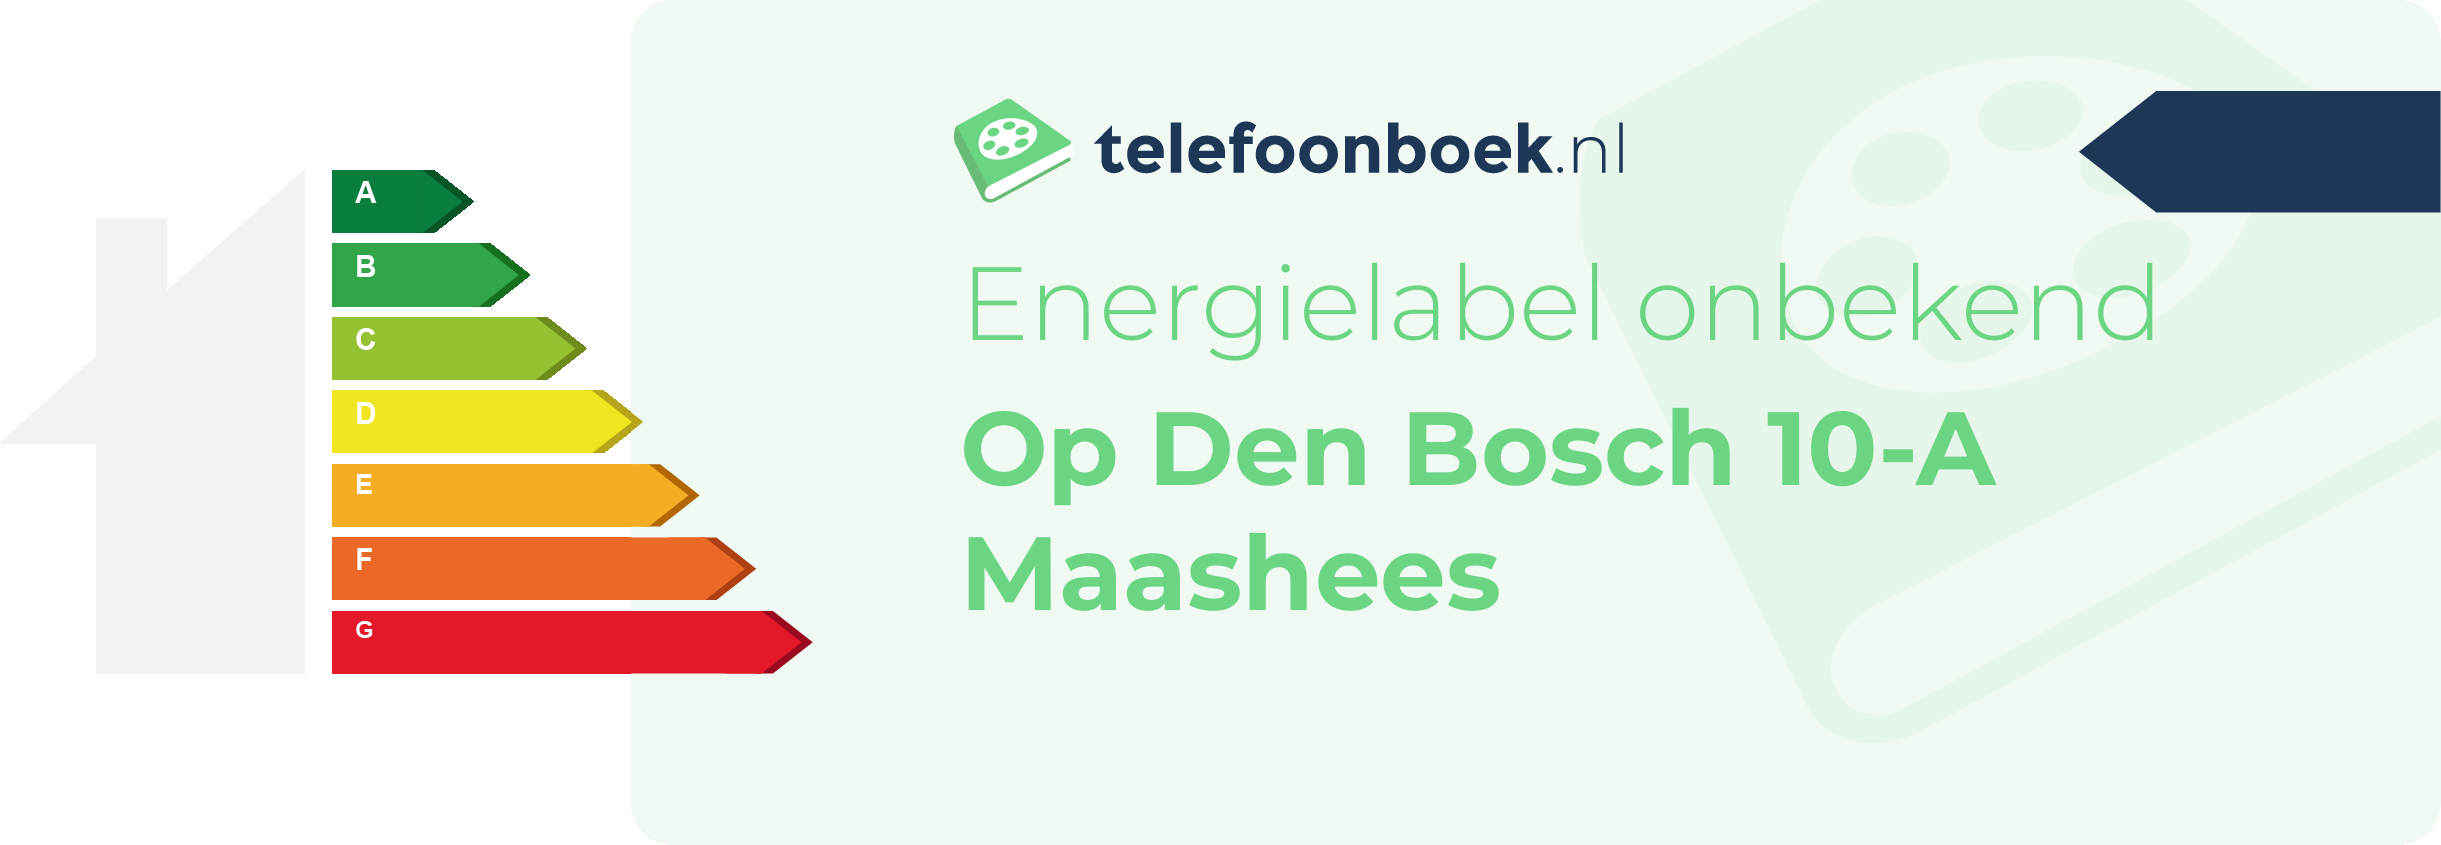 Energielabel Op Den Bosch 10-A Maashees